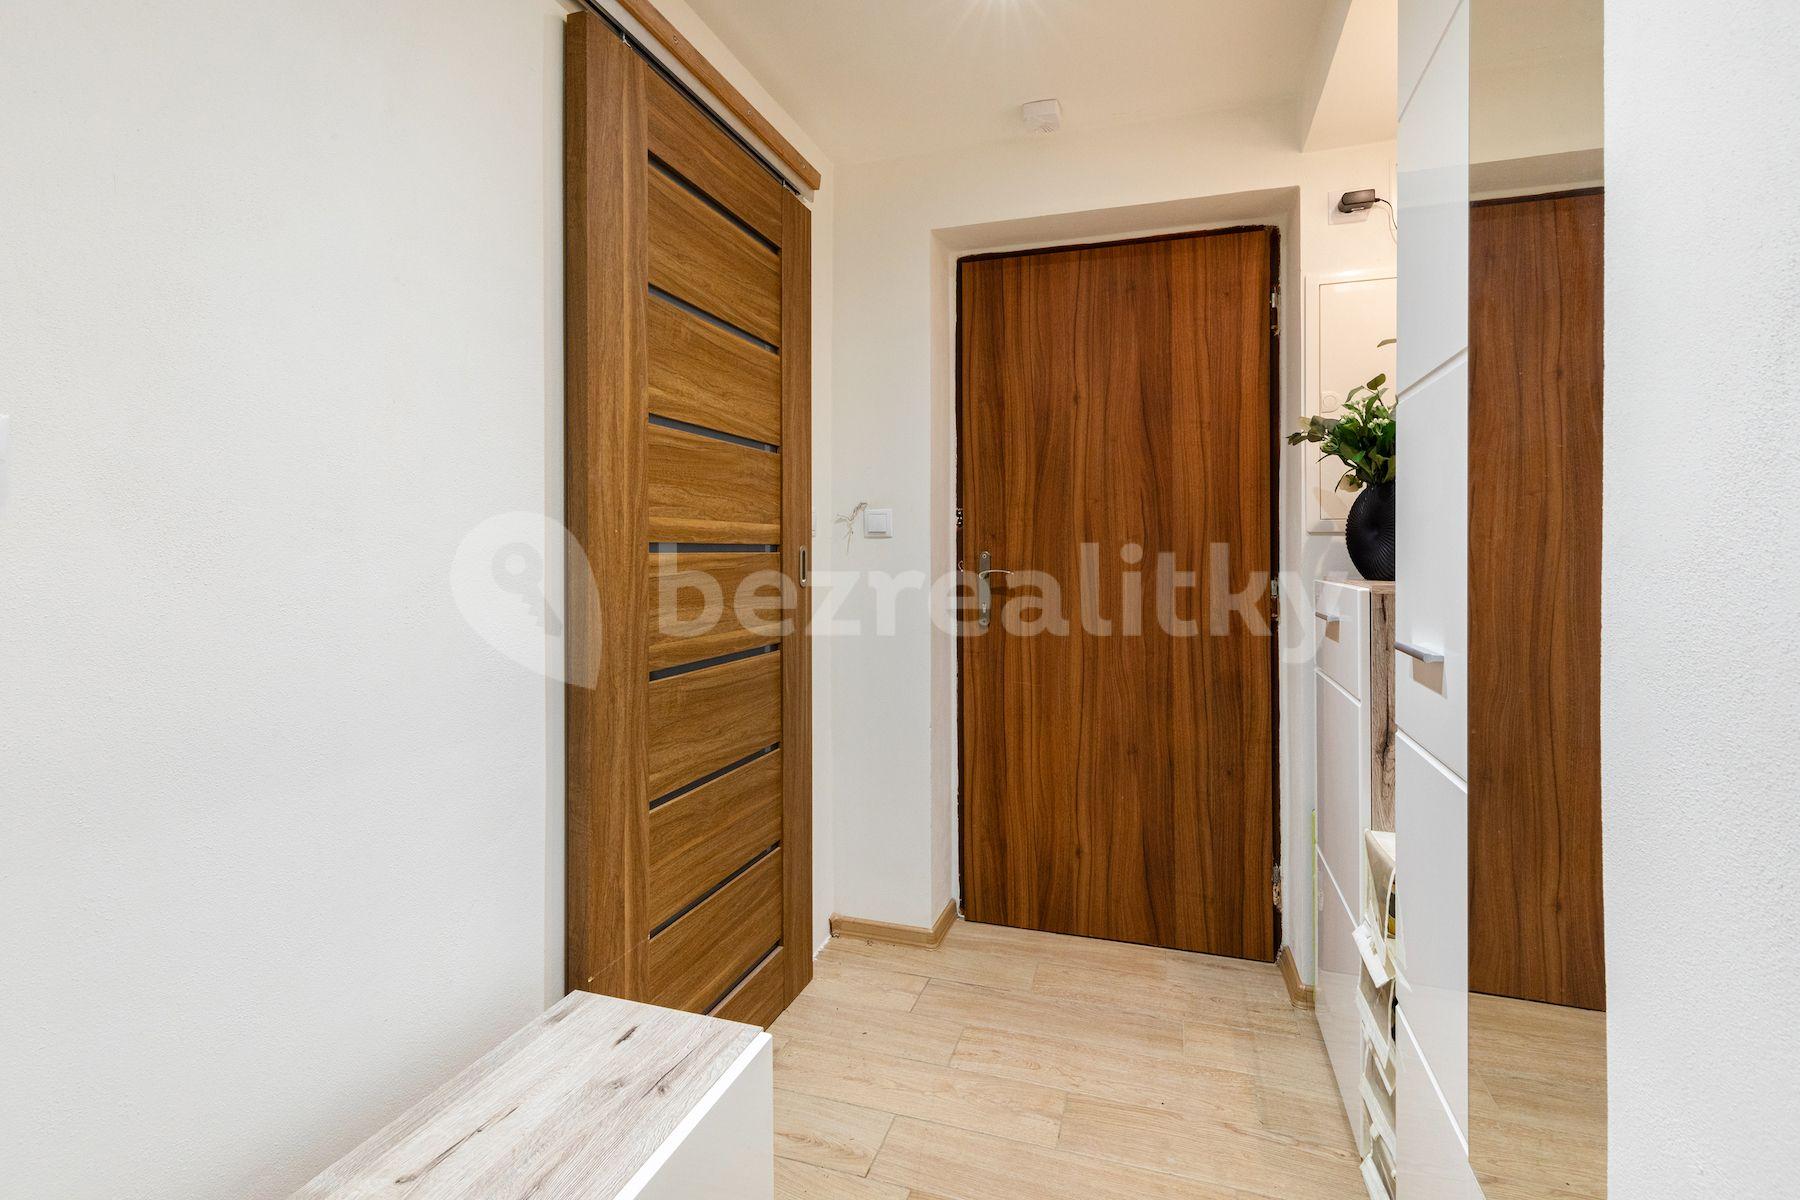 2 bedroom flat for sale, 58 m², Vysoká Pec, Bohutín, Středočeský Region